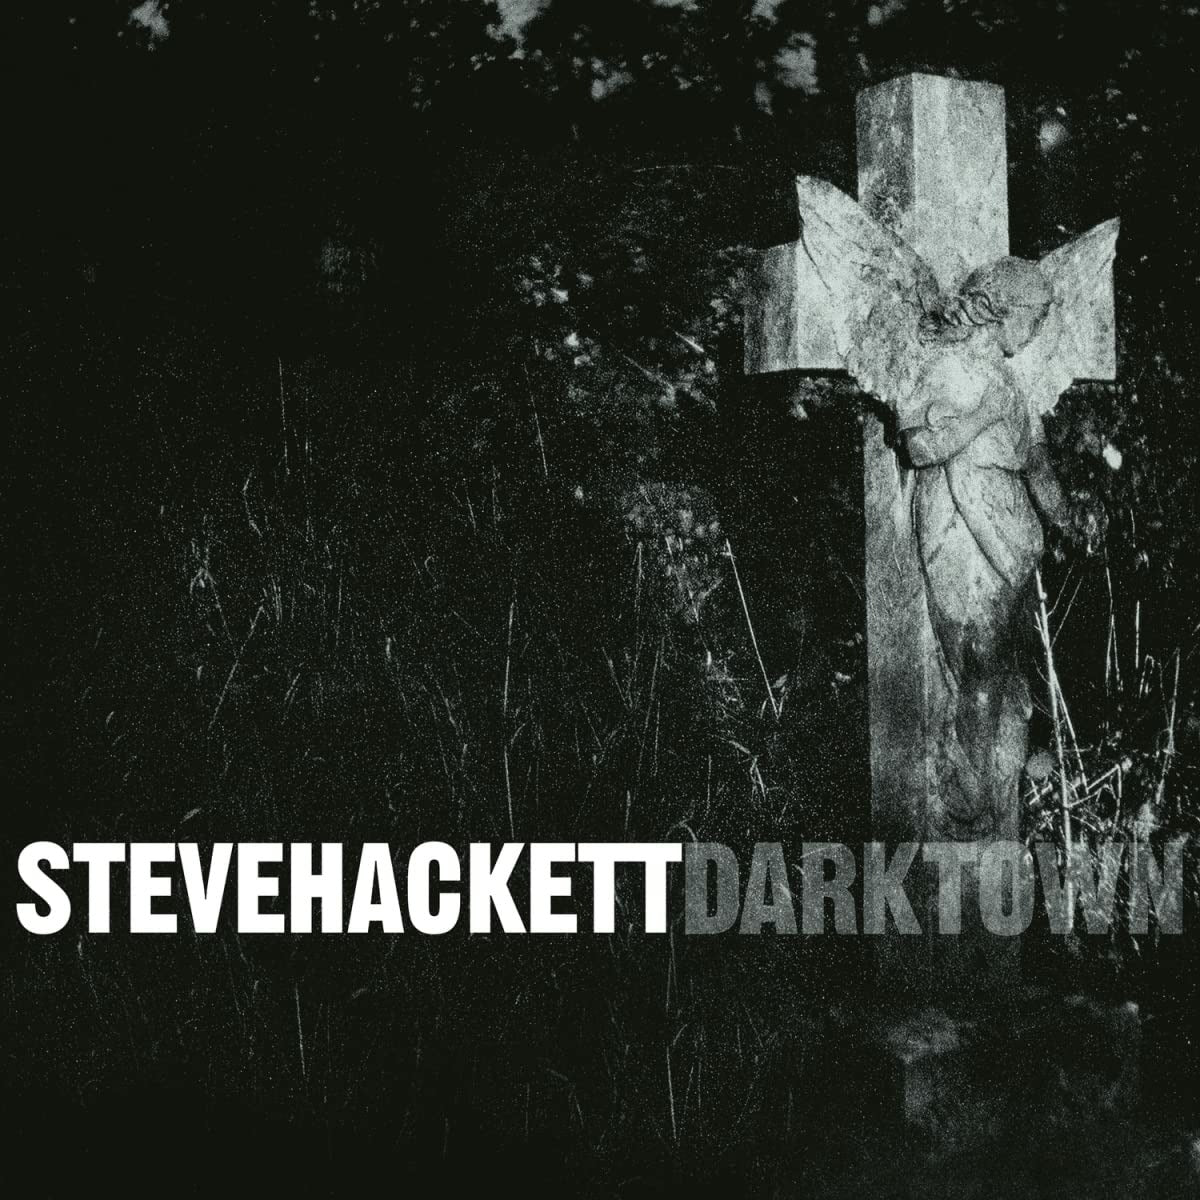 Steve Hackett - Darktown